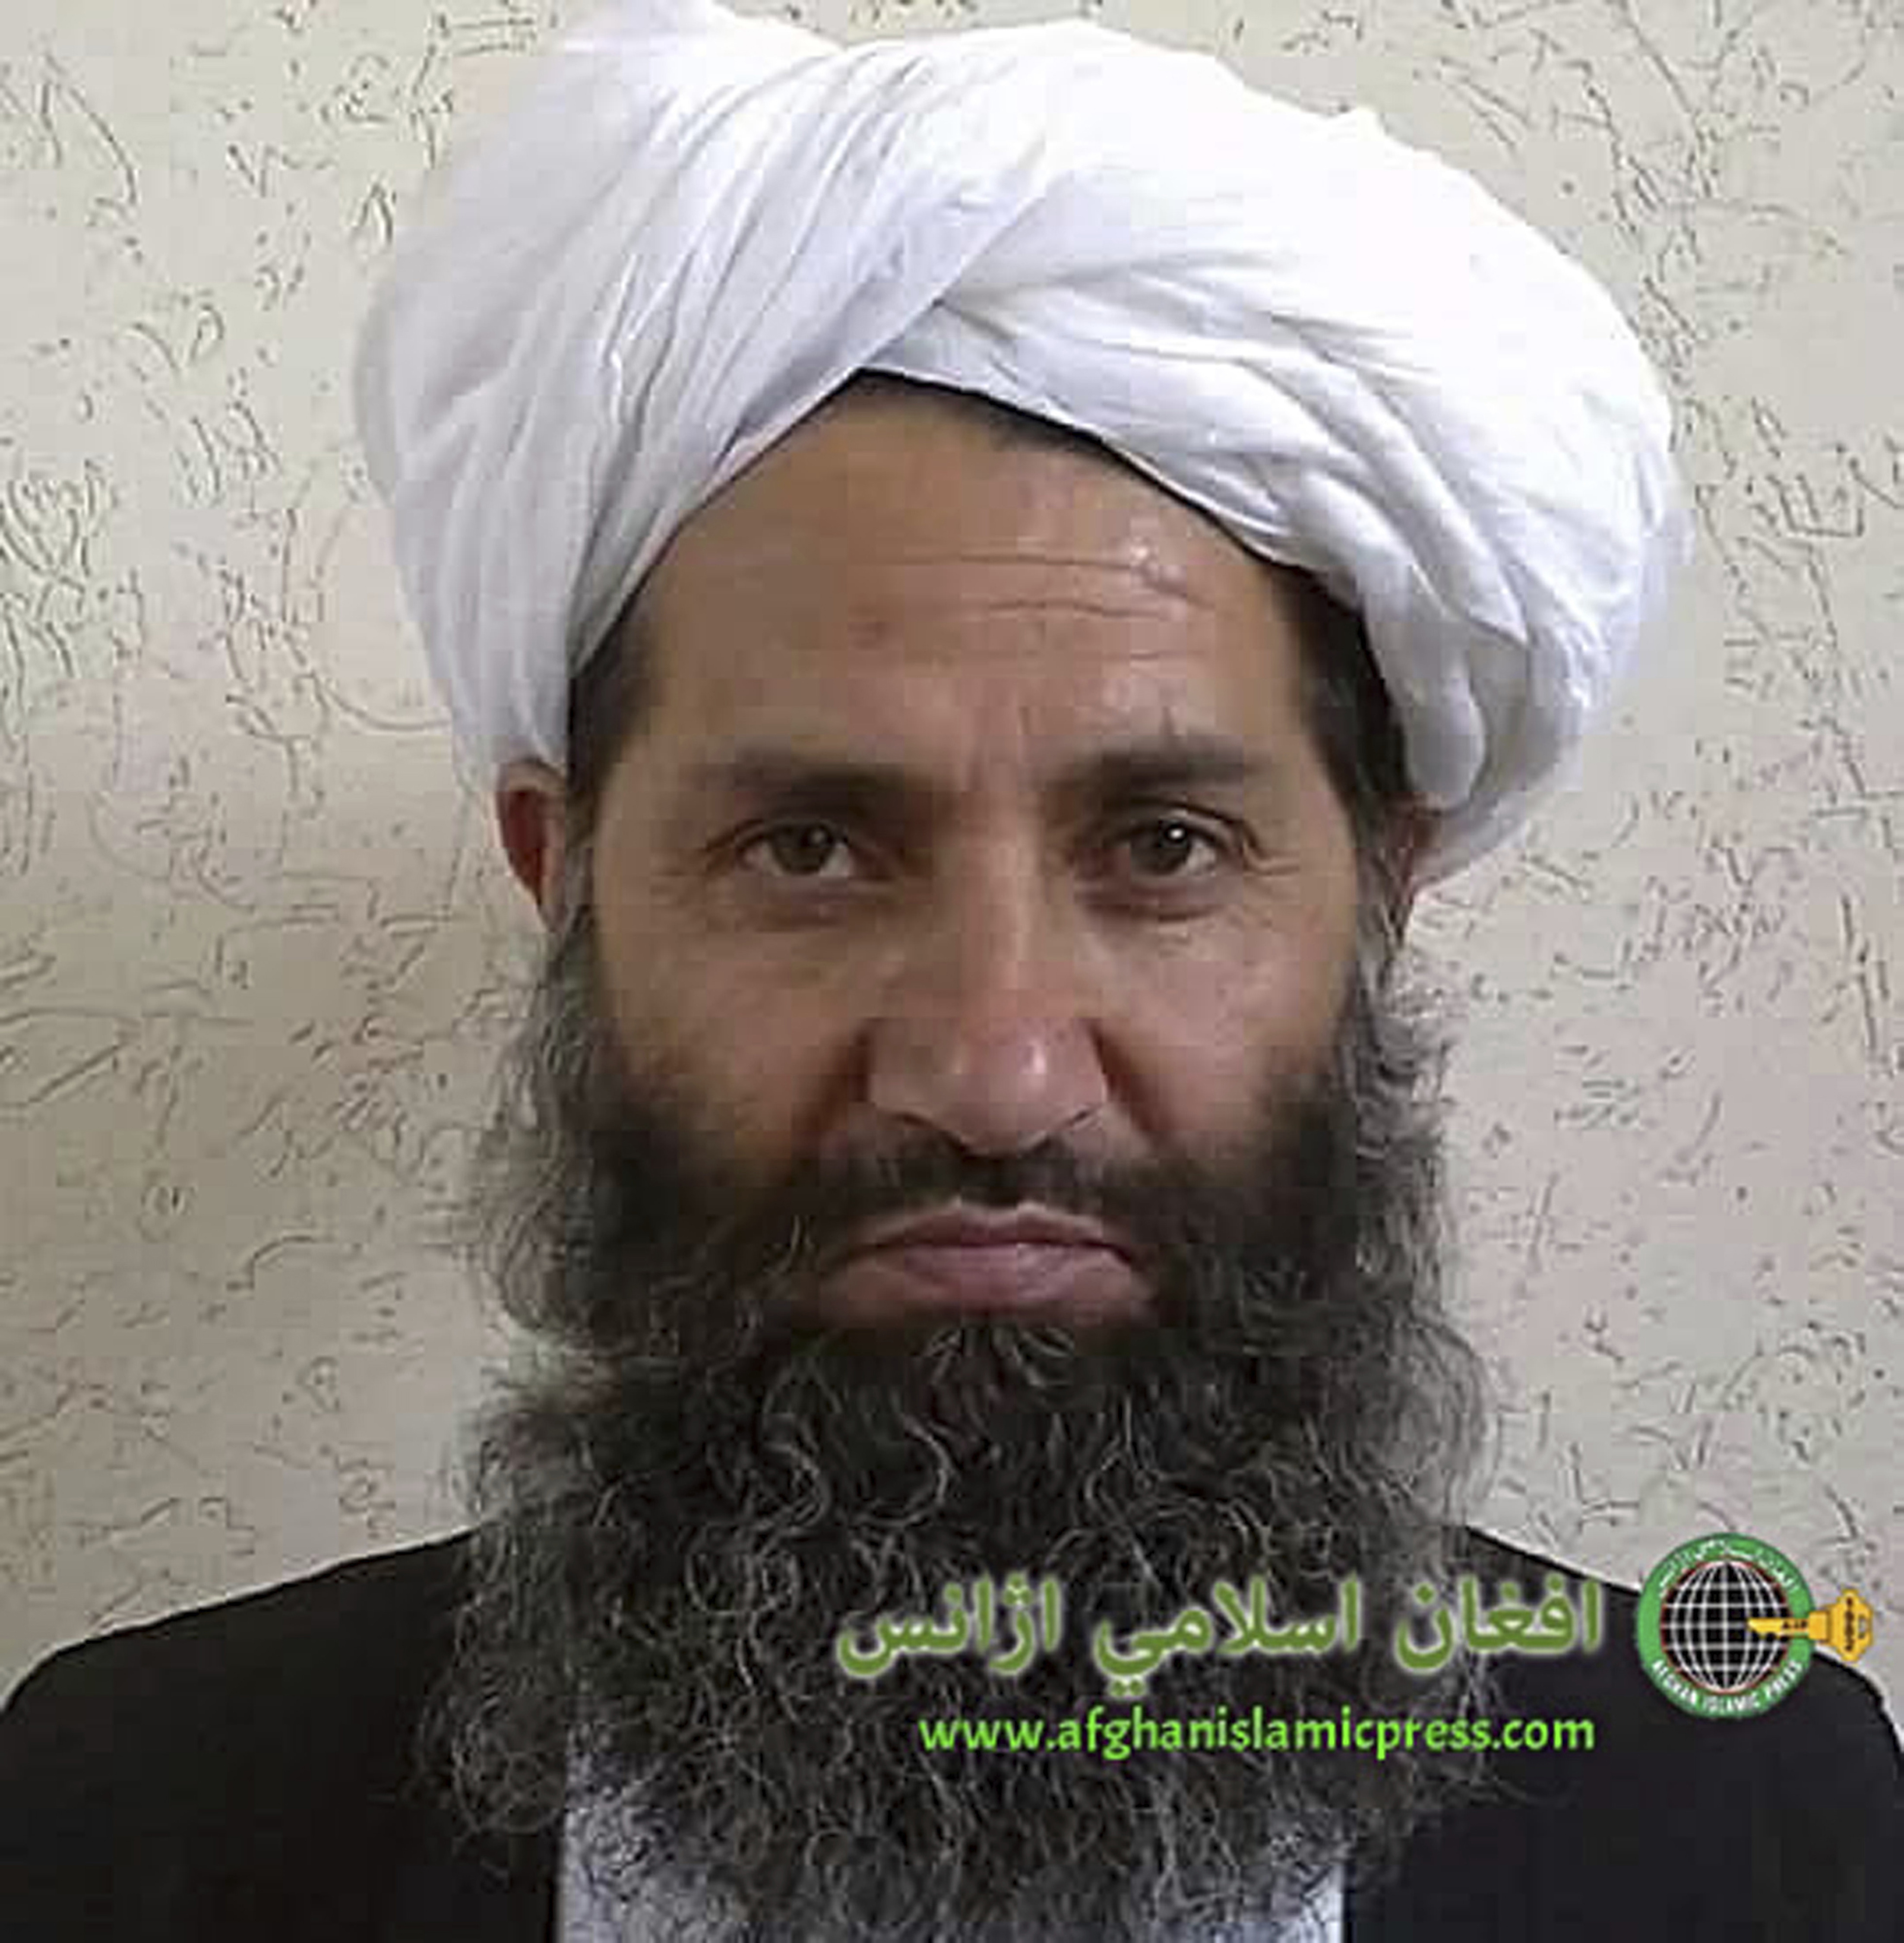 Снимка на лидера на талибаните Маулви Хайбатула Ахунзада, направена неизвестно къде и кога